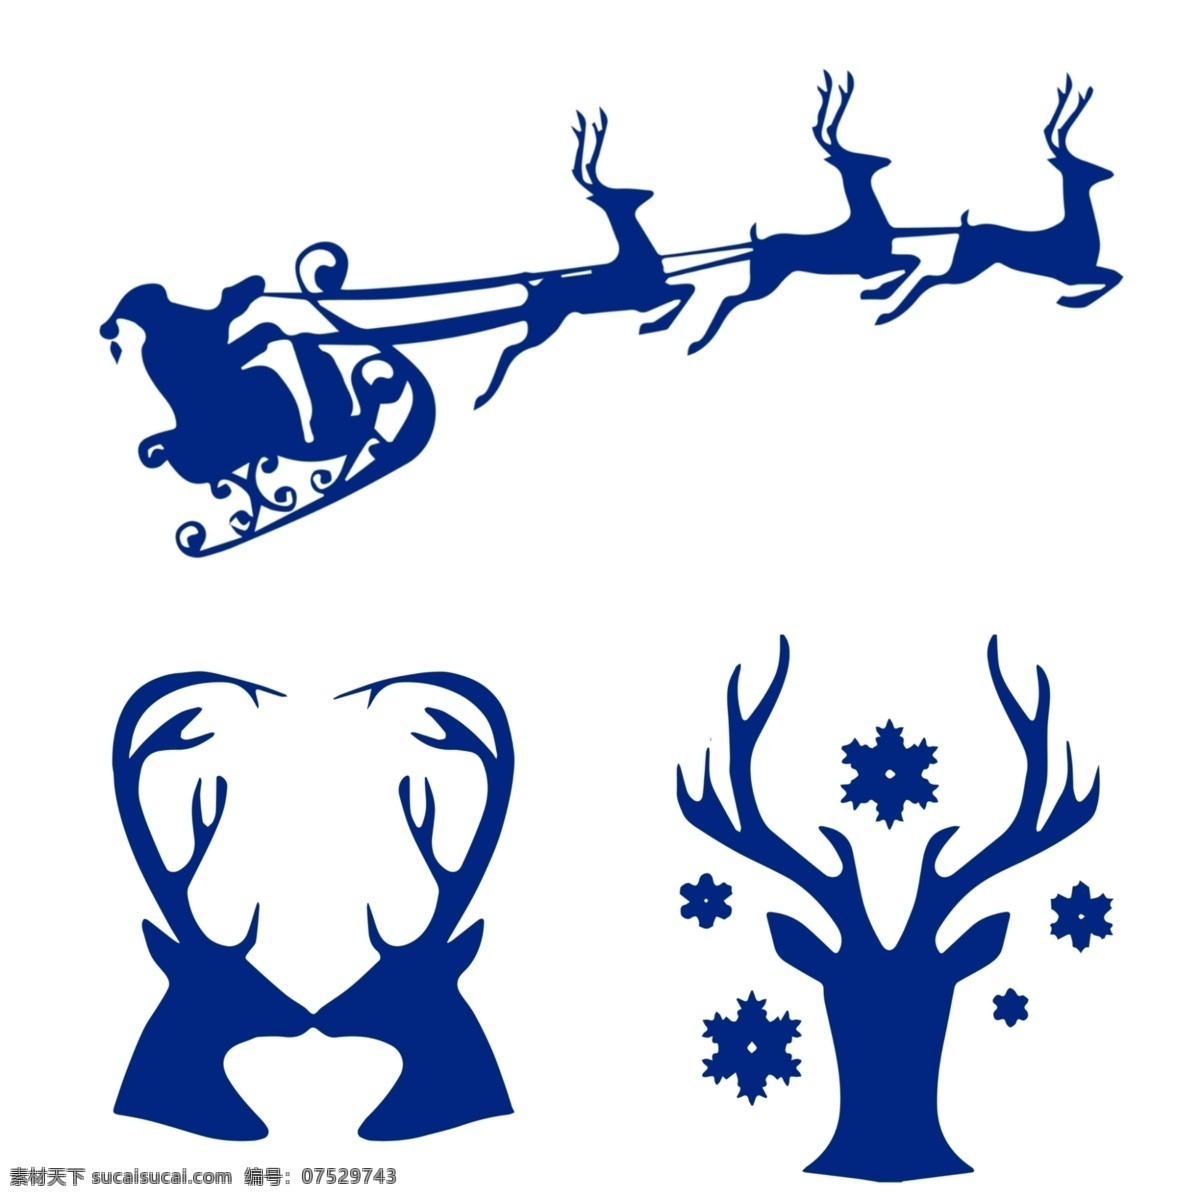 圣诞 鹿 元素 图标 圣诞节 圣诞鹿元素 梅花鹿 线稿 线描 雪花 装饰 点缀 图案 底纹 广告